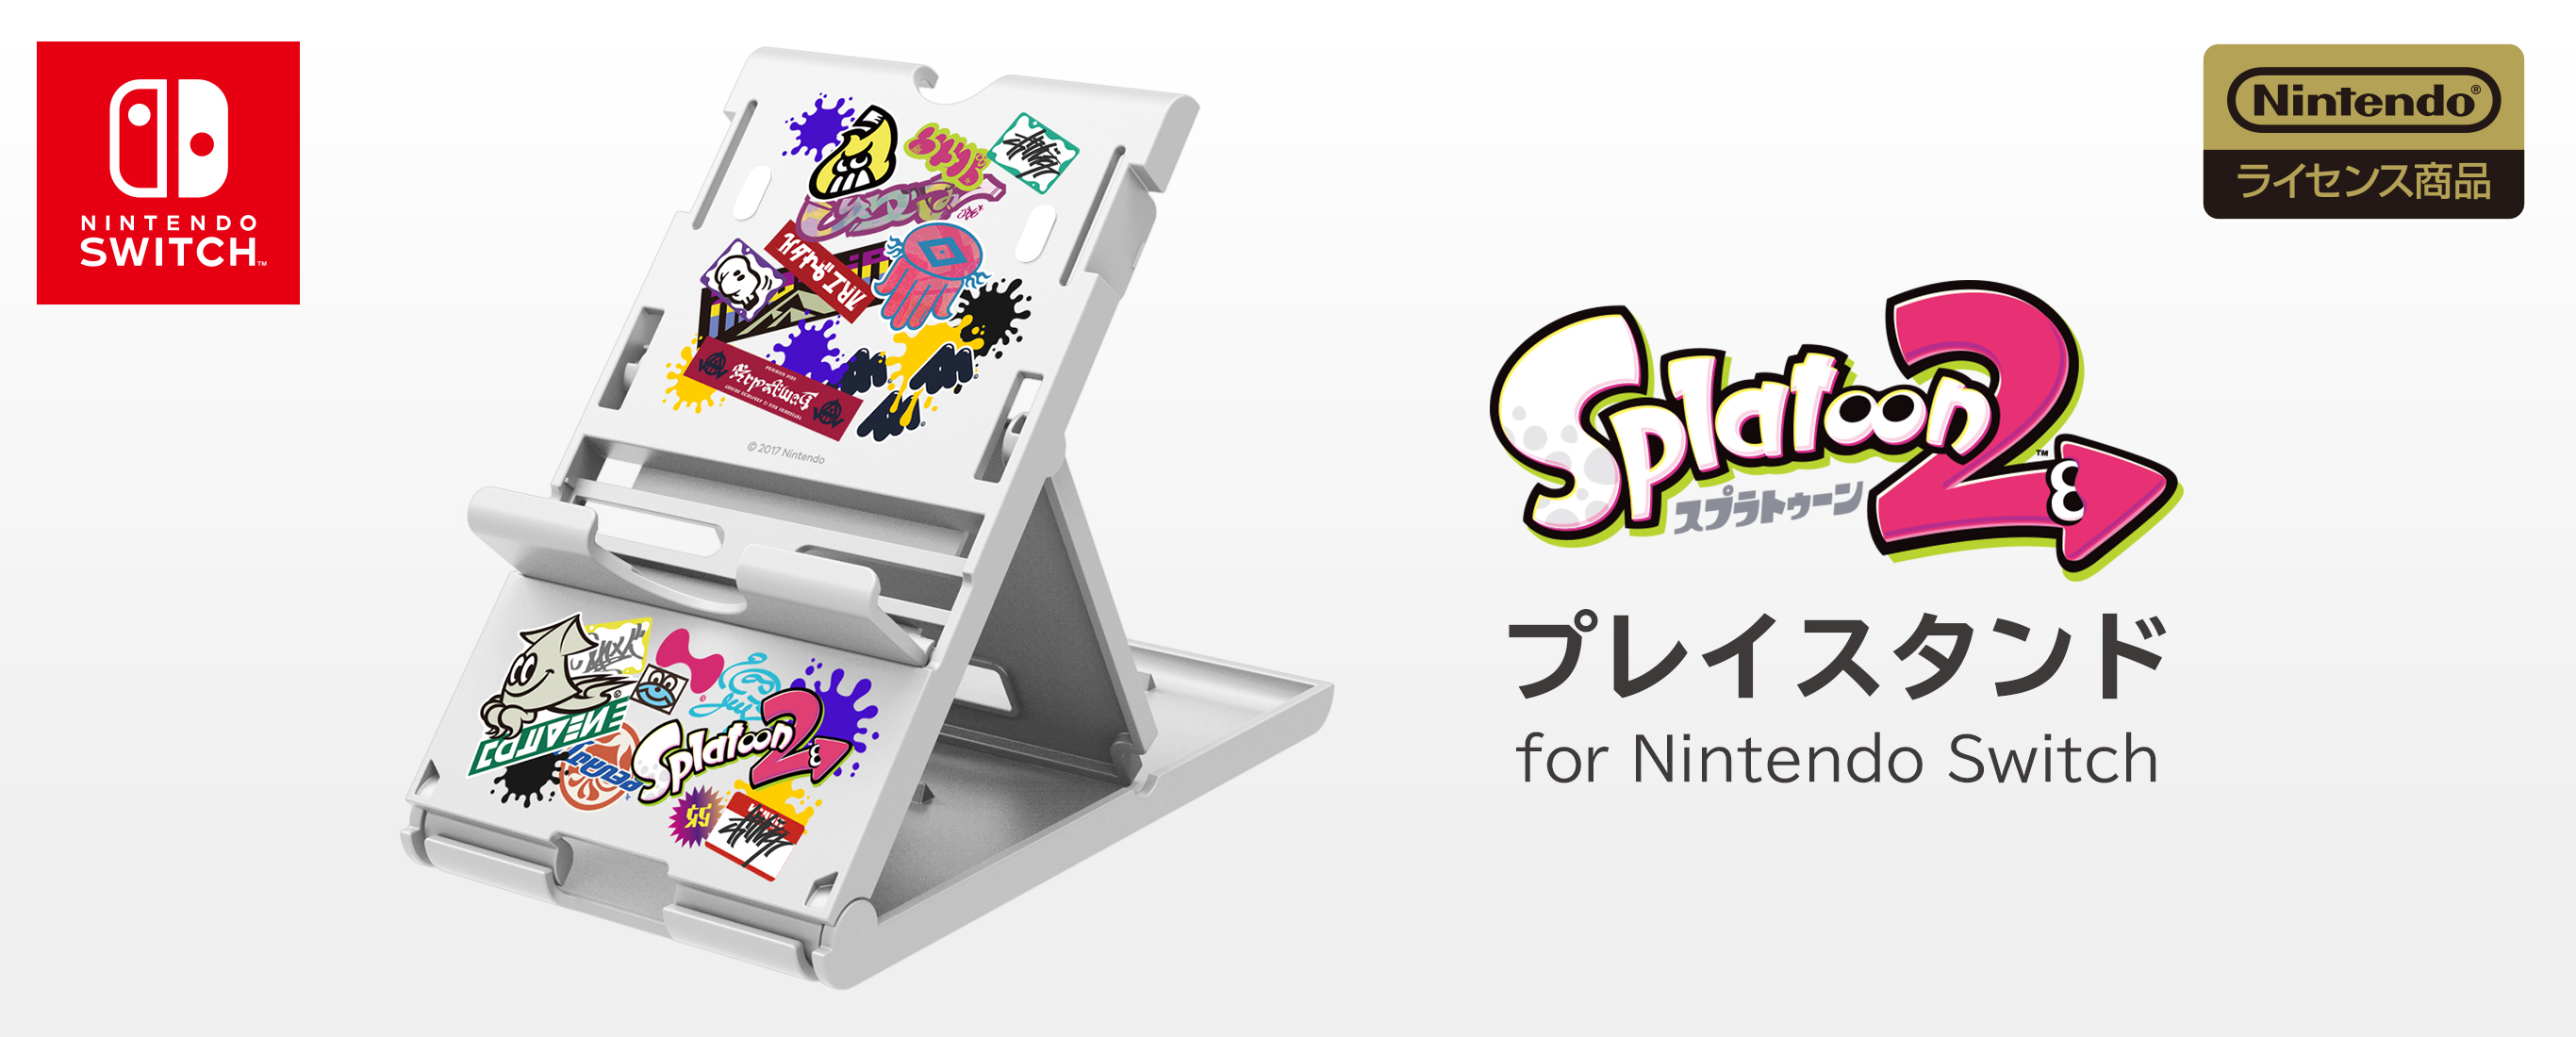 株式会社 Hori プレイスタンド For Nintendo Switch Splatoon2